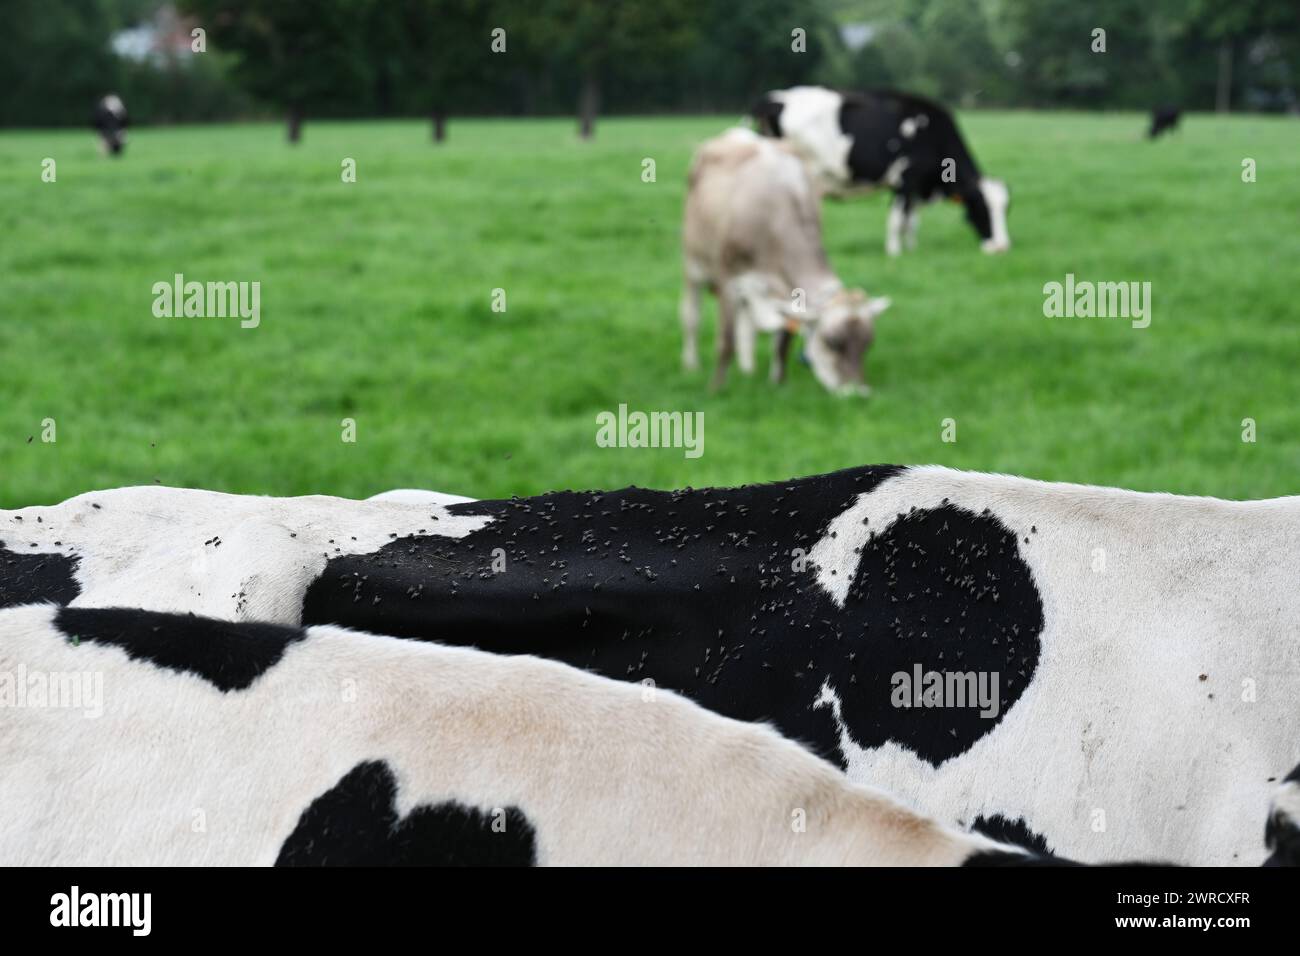 Brachycera sur le dos d'une vache Banque D'Images